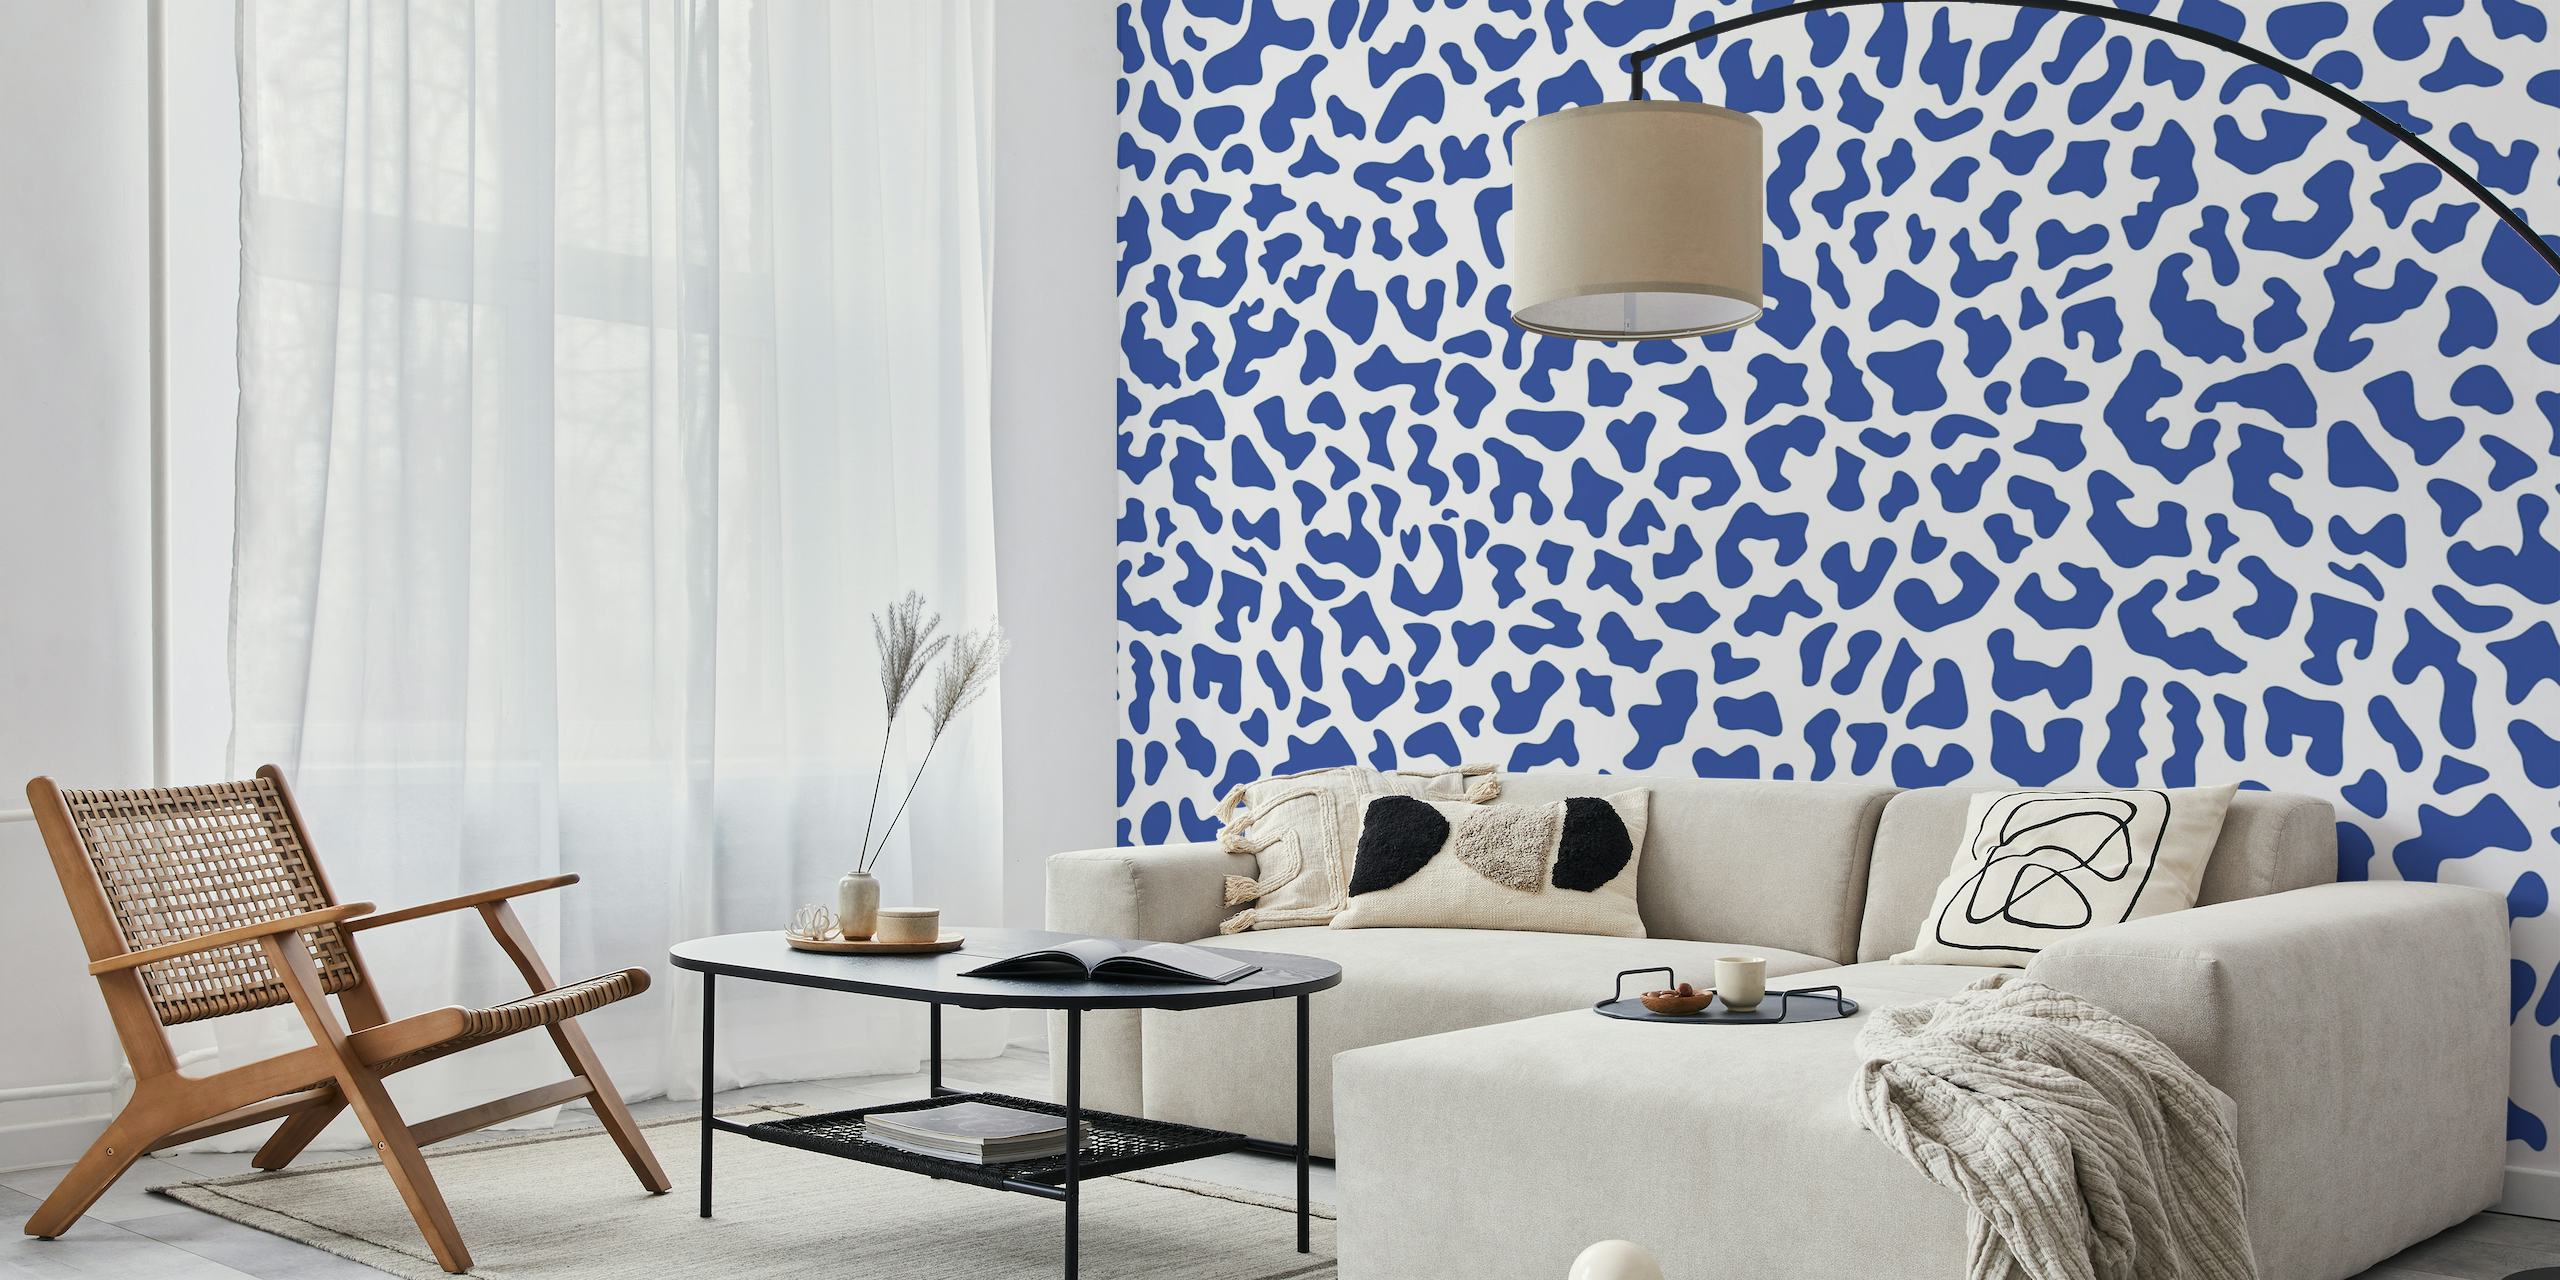 Blått och vitt leopardmönstrat tapetdesign